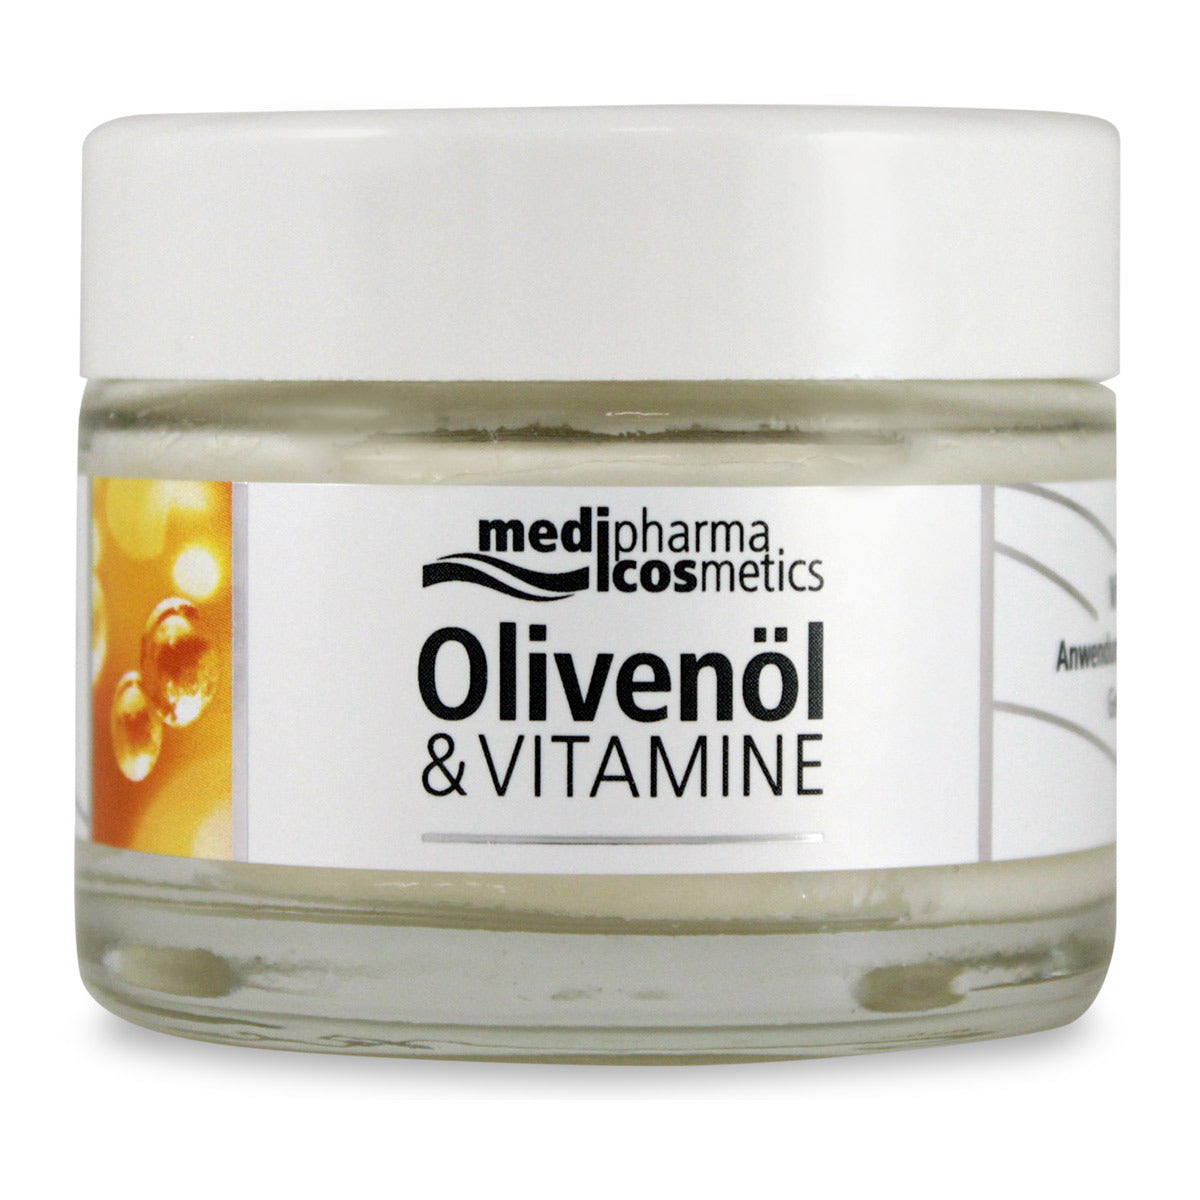 Primary image of Olivenol Vitamin Revitalizing Cream